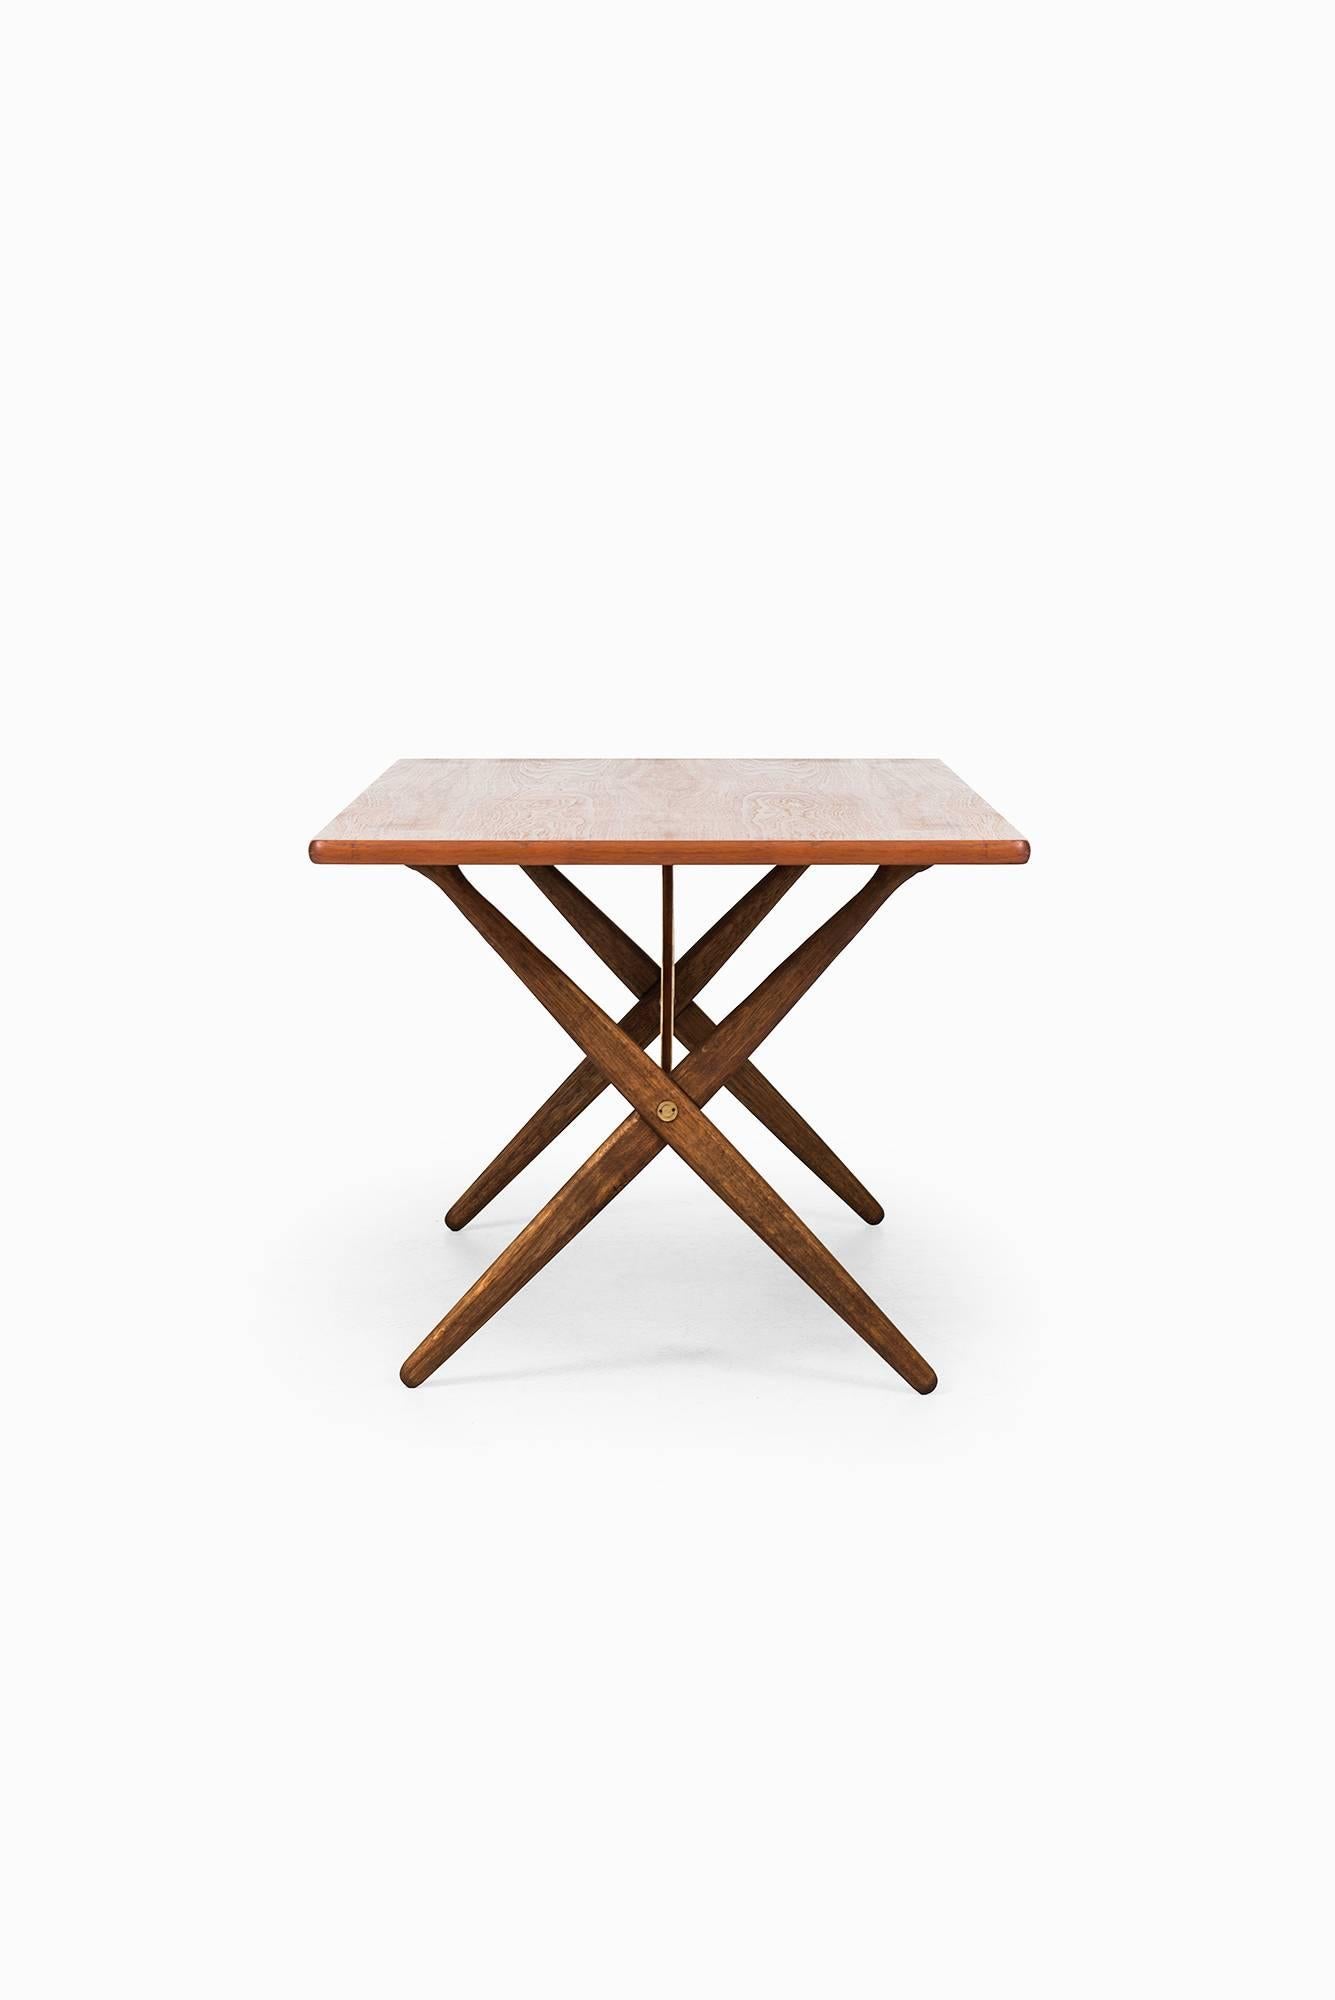 Scandinavian Modern Hans Wegner Dining Table/Desk Model At-303 by Andreas Tuck in Denmark